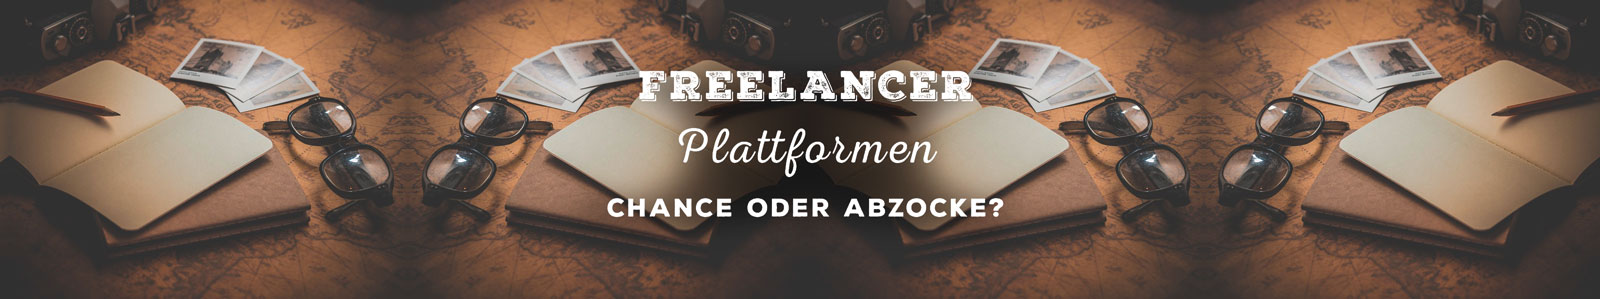 online Freelancer plattformen das titelbild